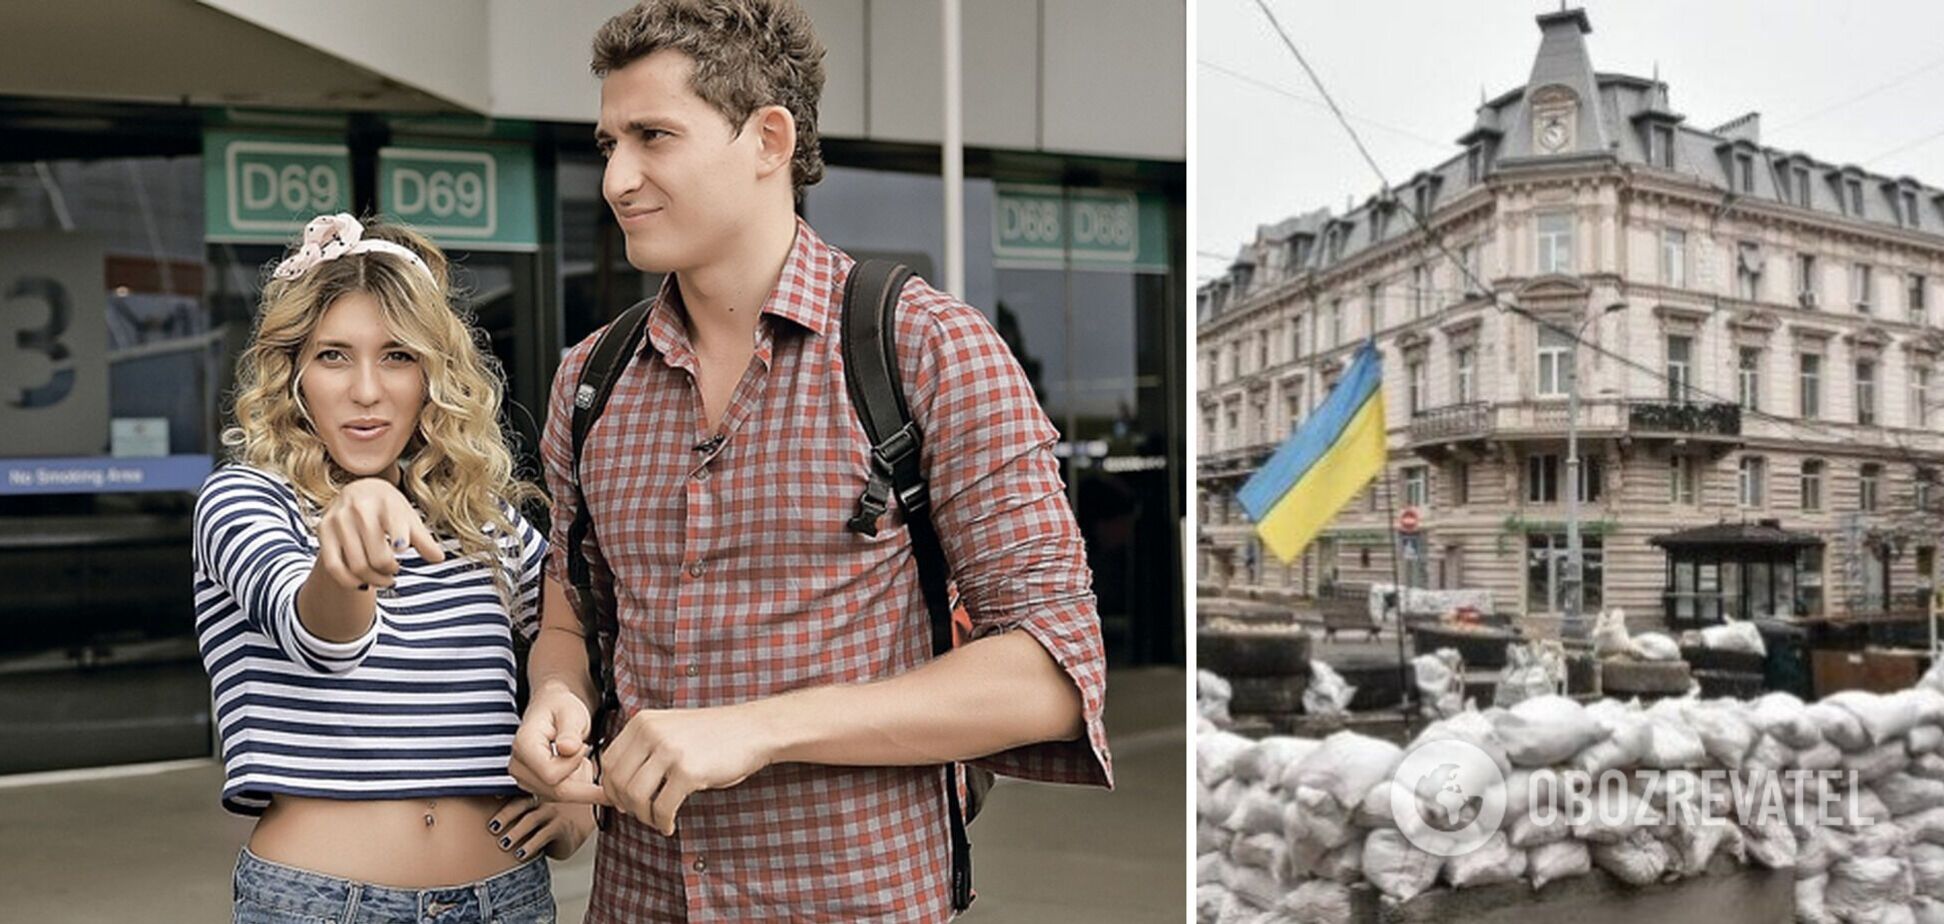 Коля Серга: брат Регины Тодоренко – против России, а родители поддерживают ее позицию